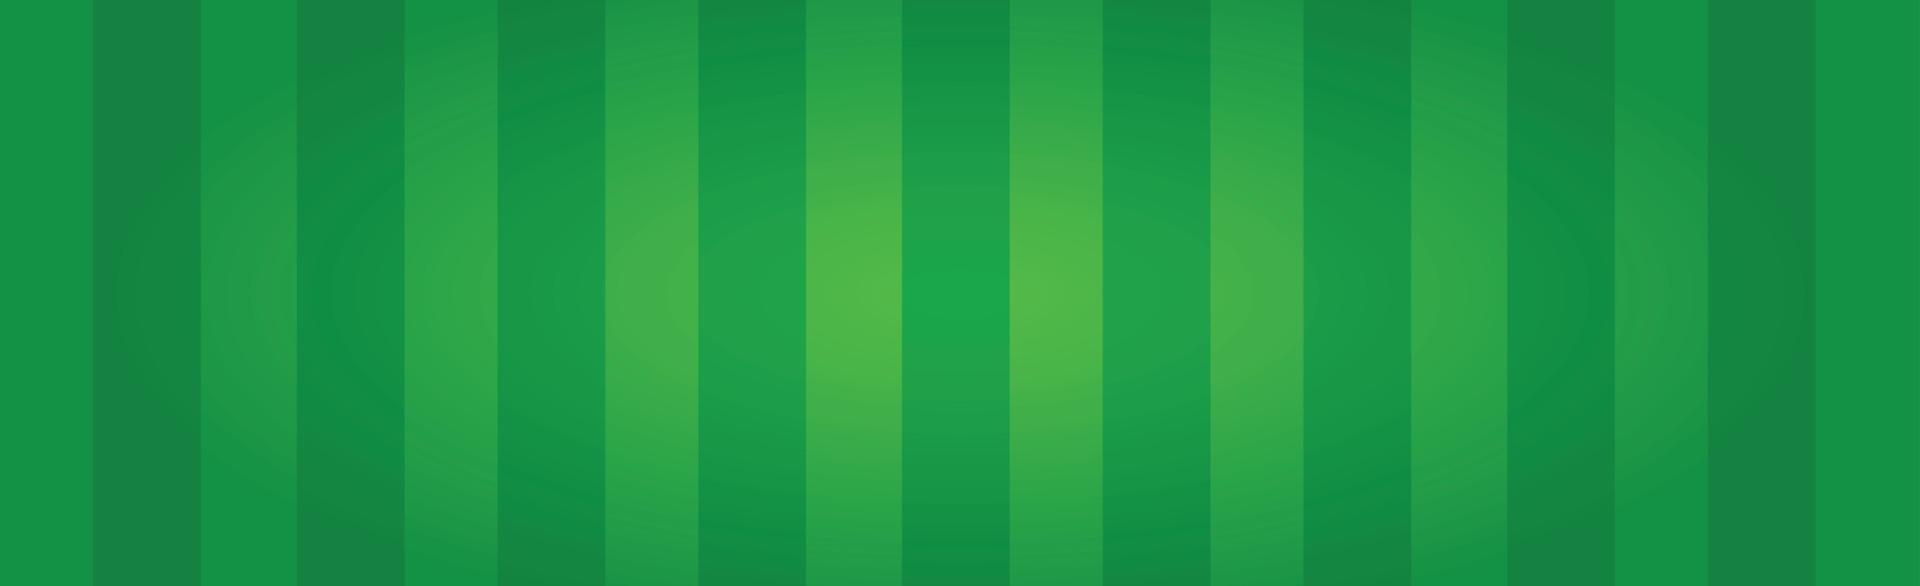 realistisches grünes fußballfeld mit vertikalen linien - vektor